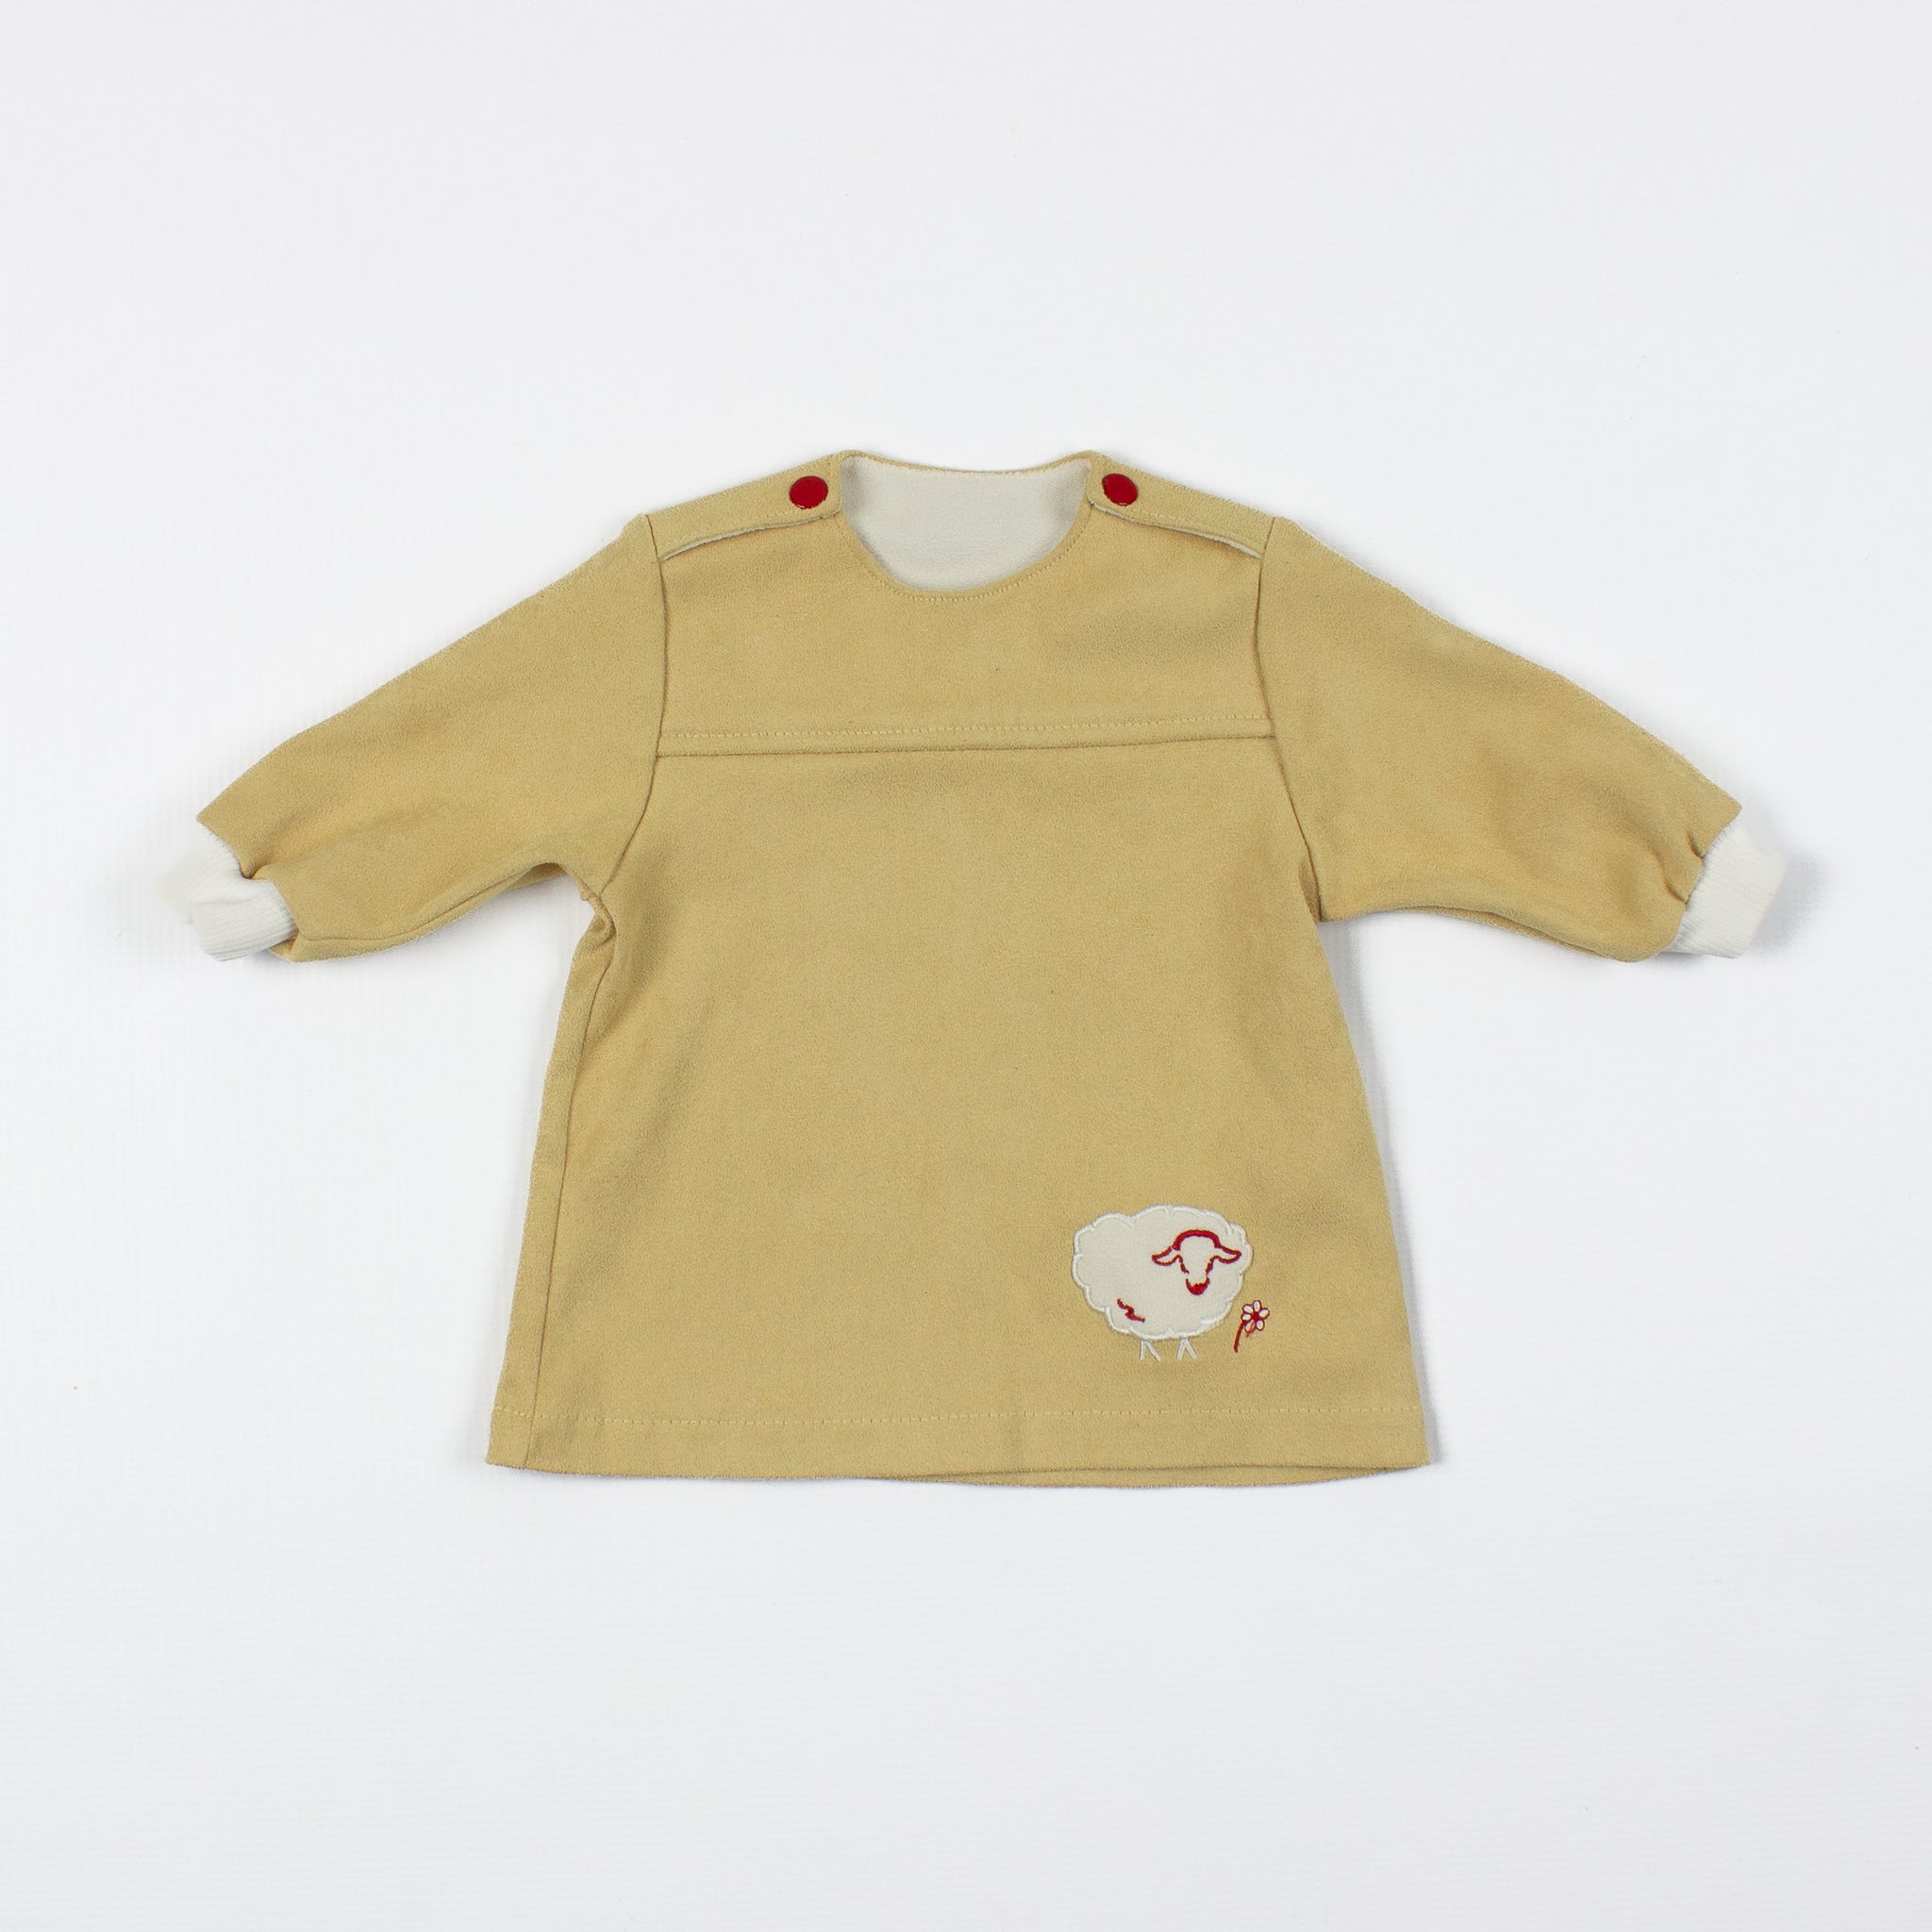 3 Months Vintage Children's Sheep Sweater